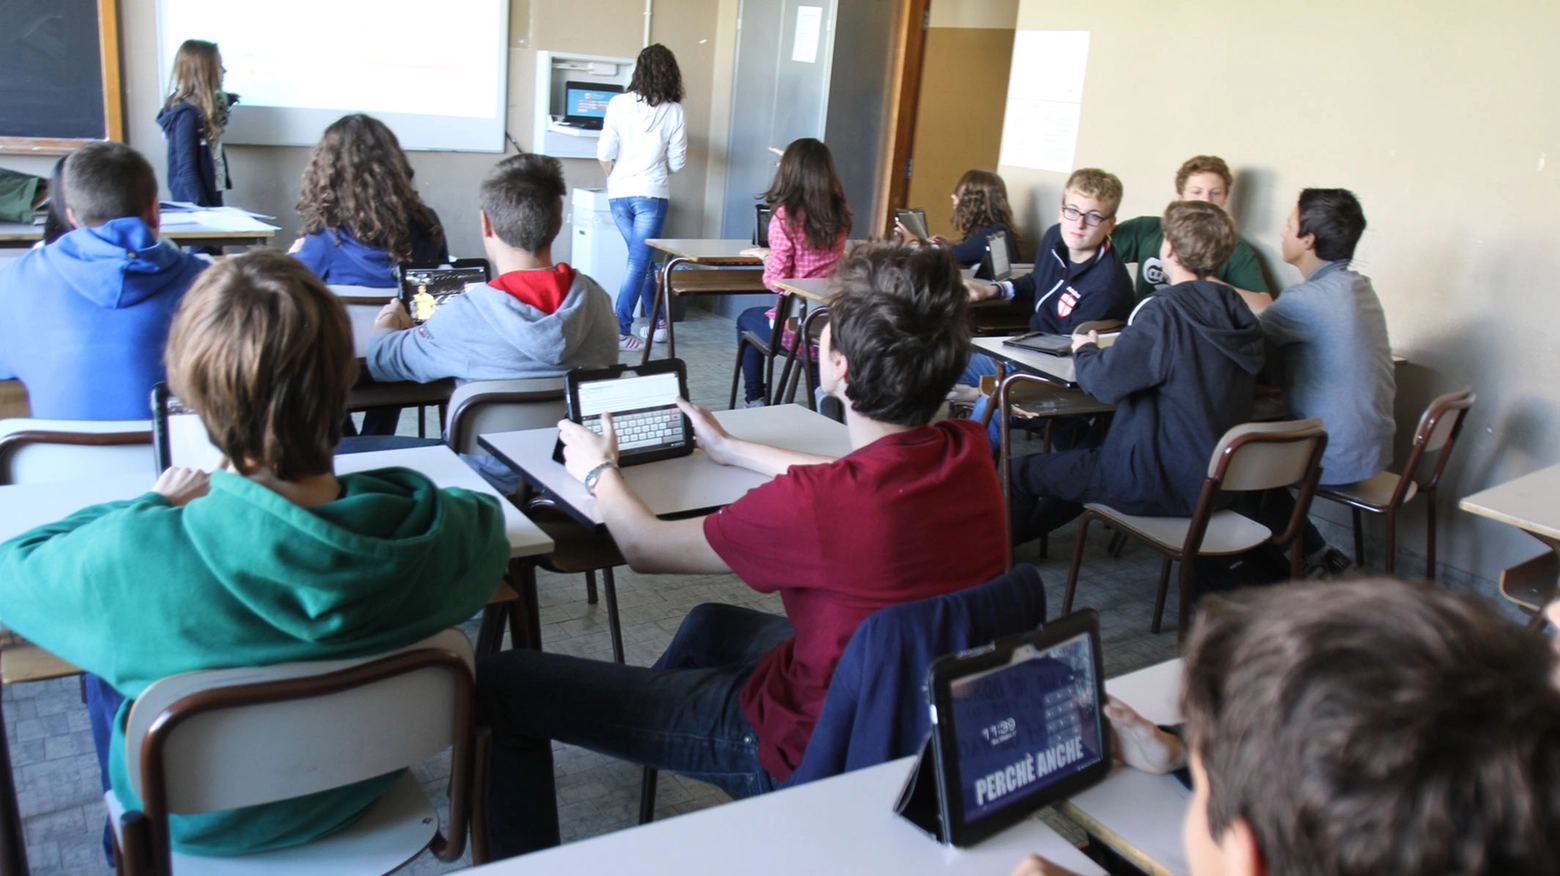 Studenti in classe (foto d'archivio Radaelli)